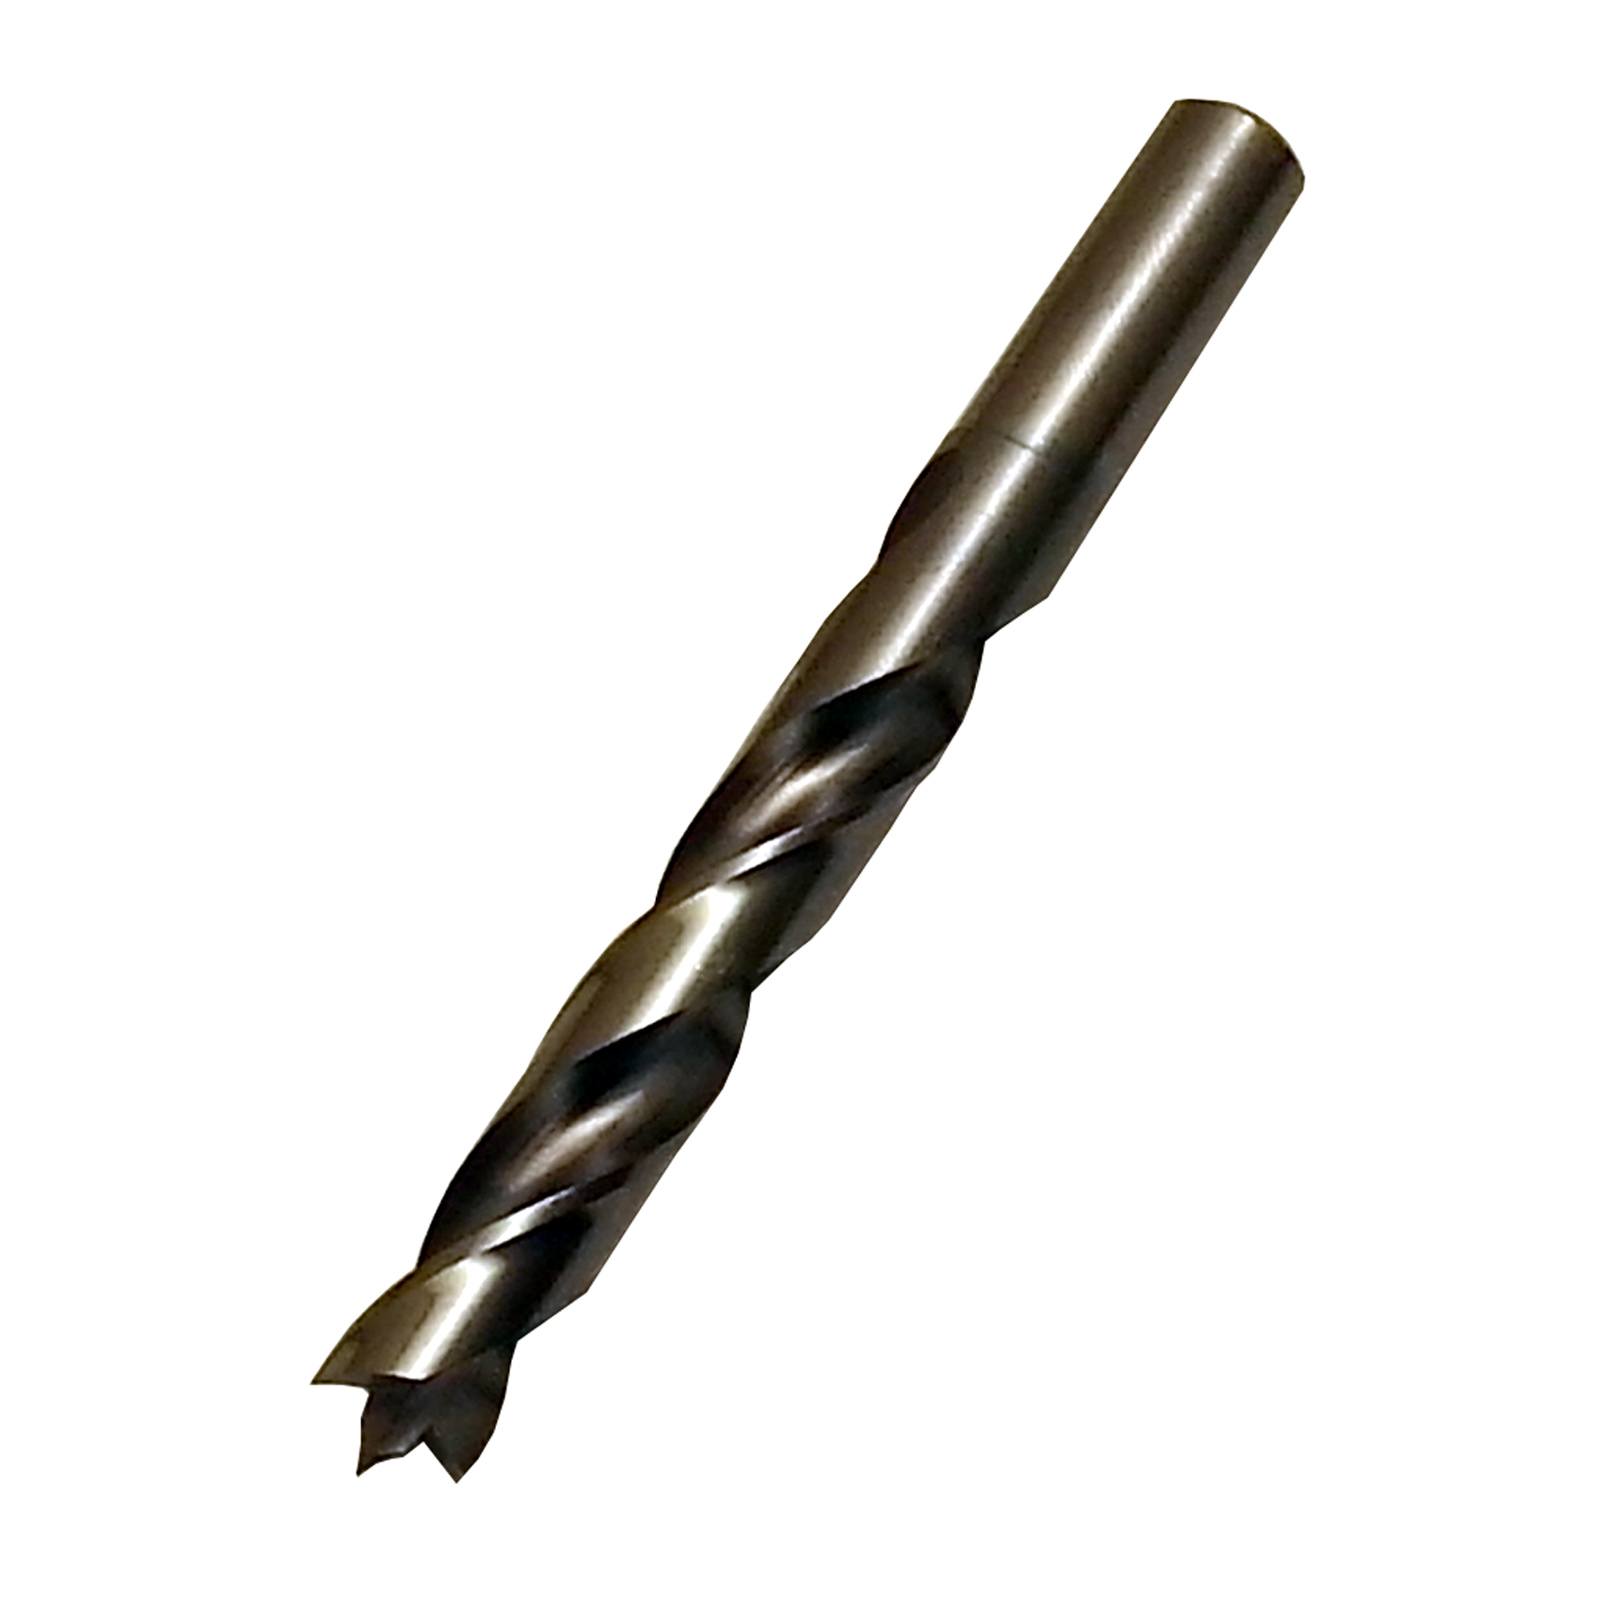 Timberline 606-143 Brad Point Drill Bit 10mm D x 10mm SHK 